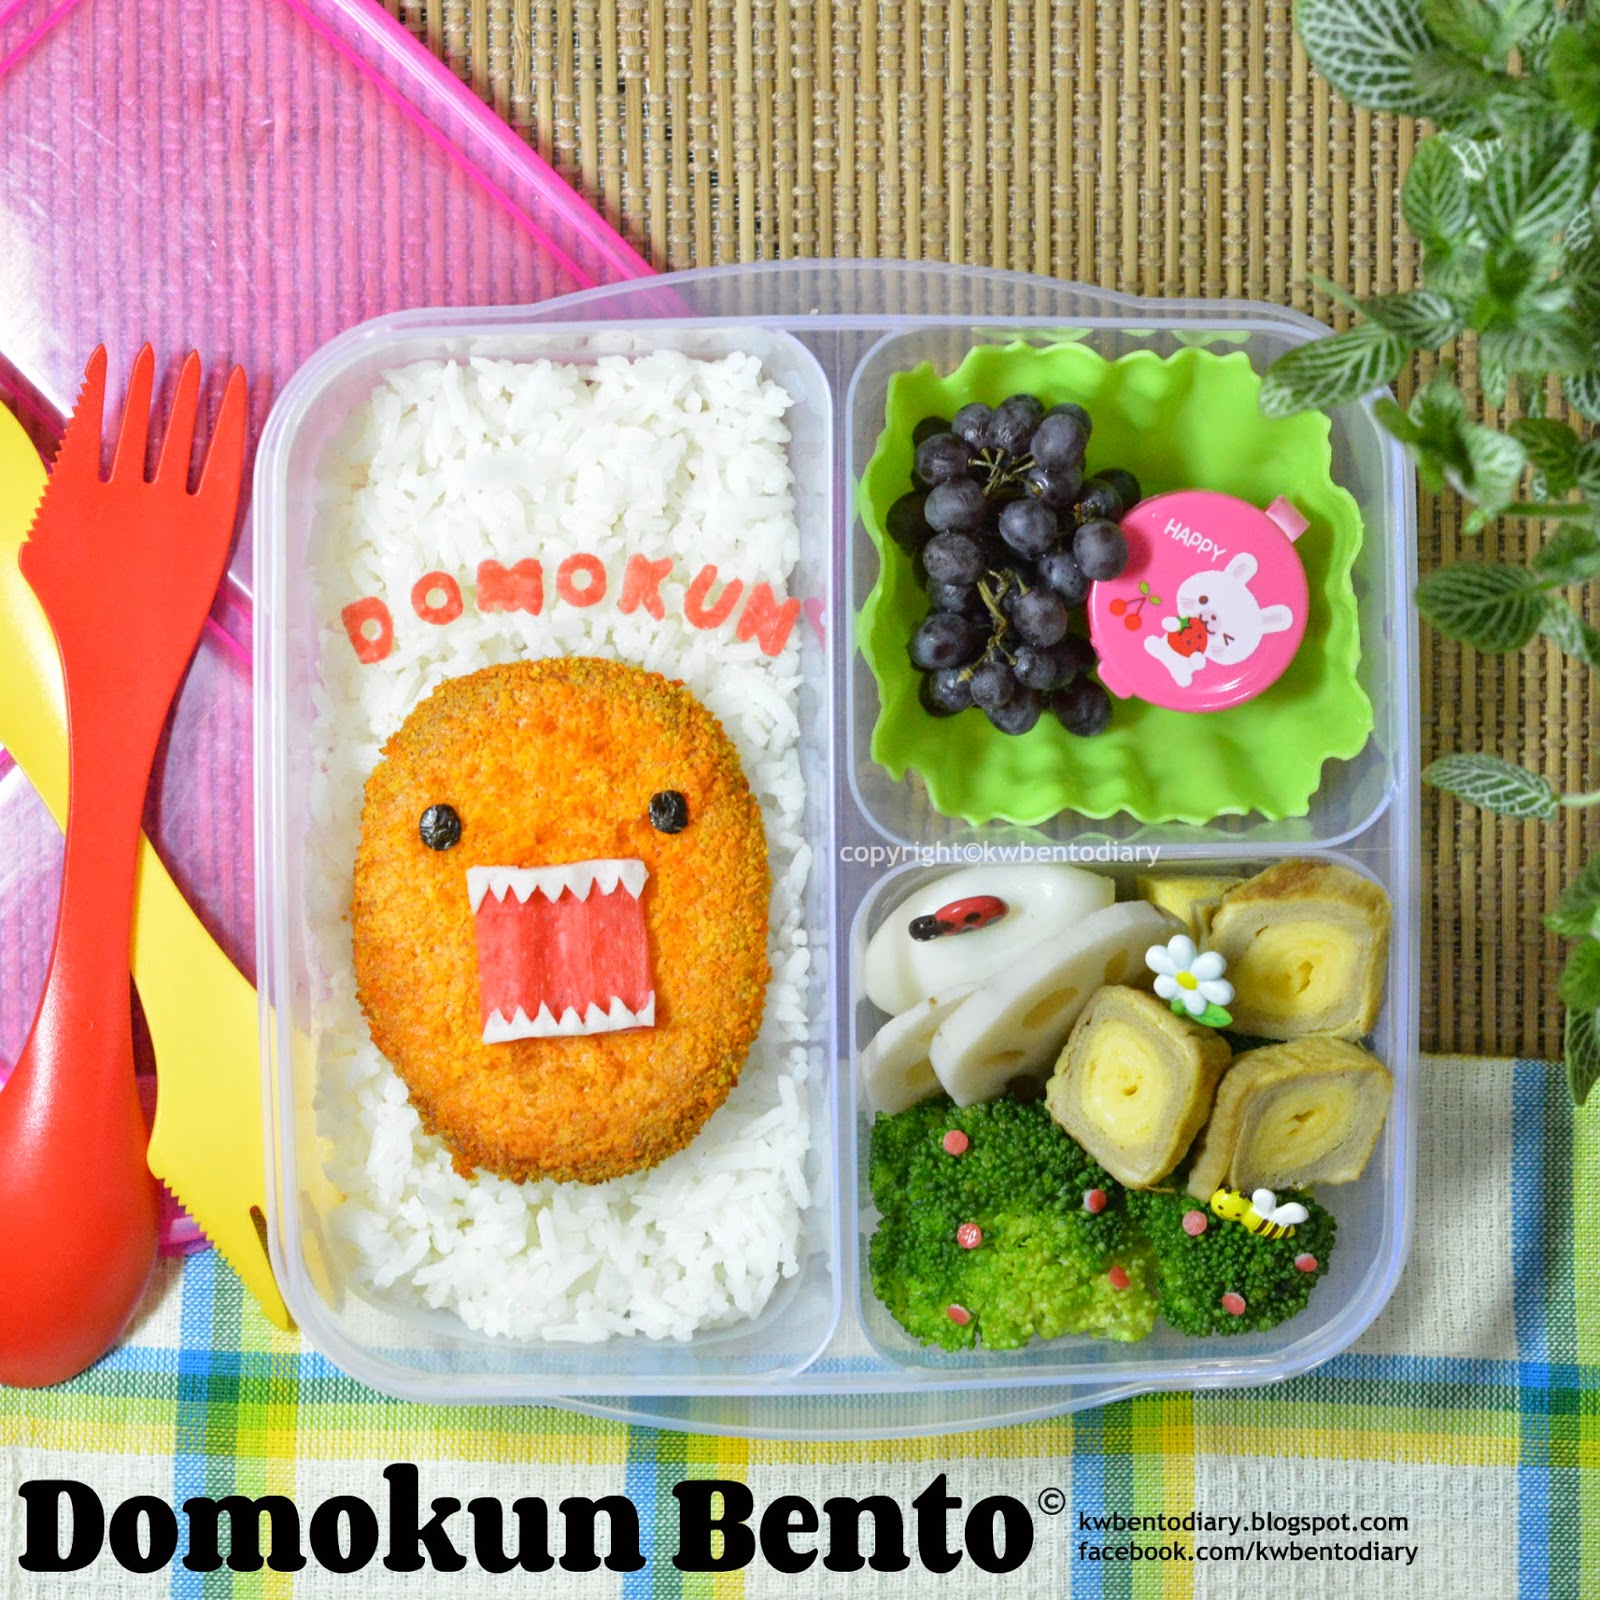 Karenwee's Bento Diary: Bento2014#Oct01~Kuromi Bento